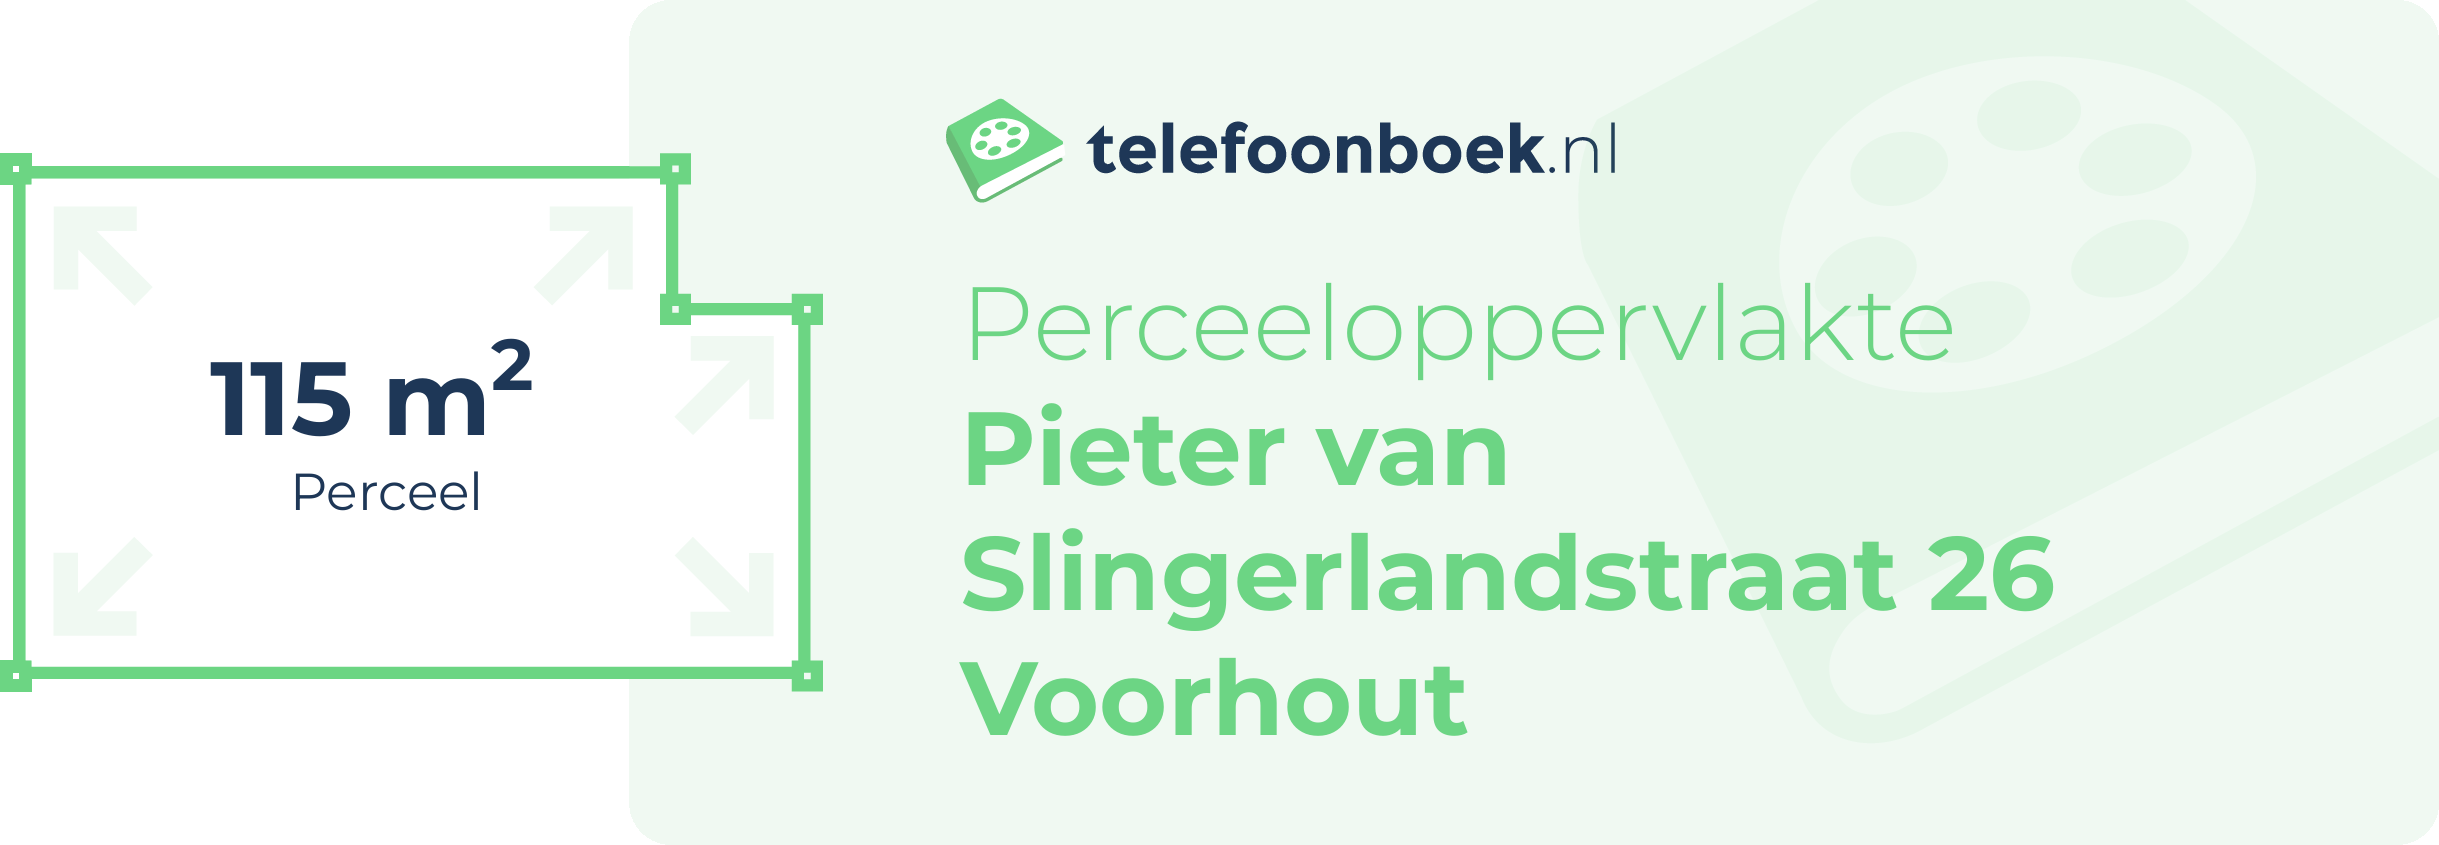 Perceeloppervlakte Pieter Van Slingerlandstraat 26 Voorhout